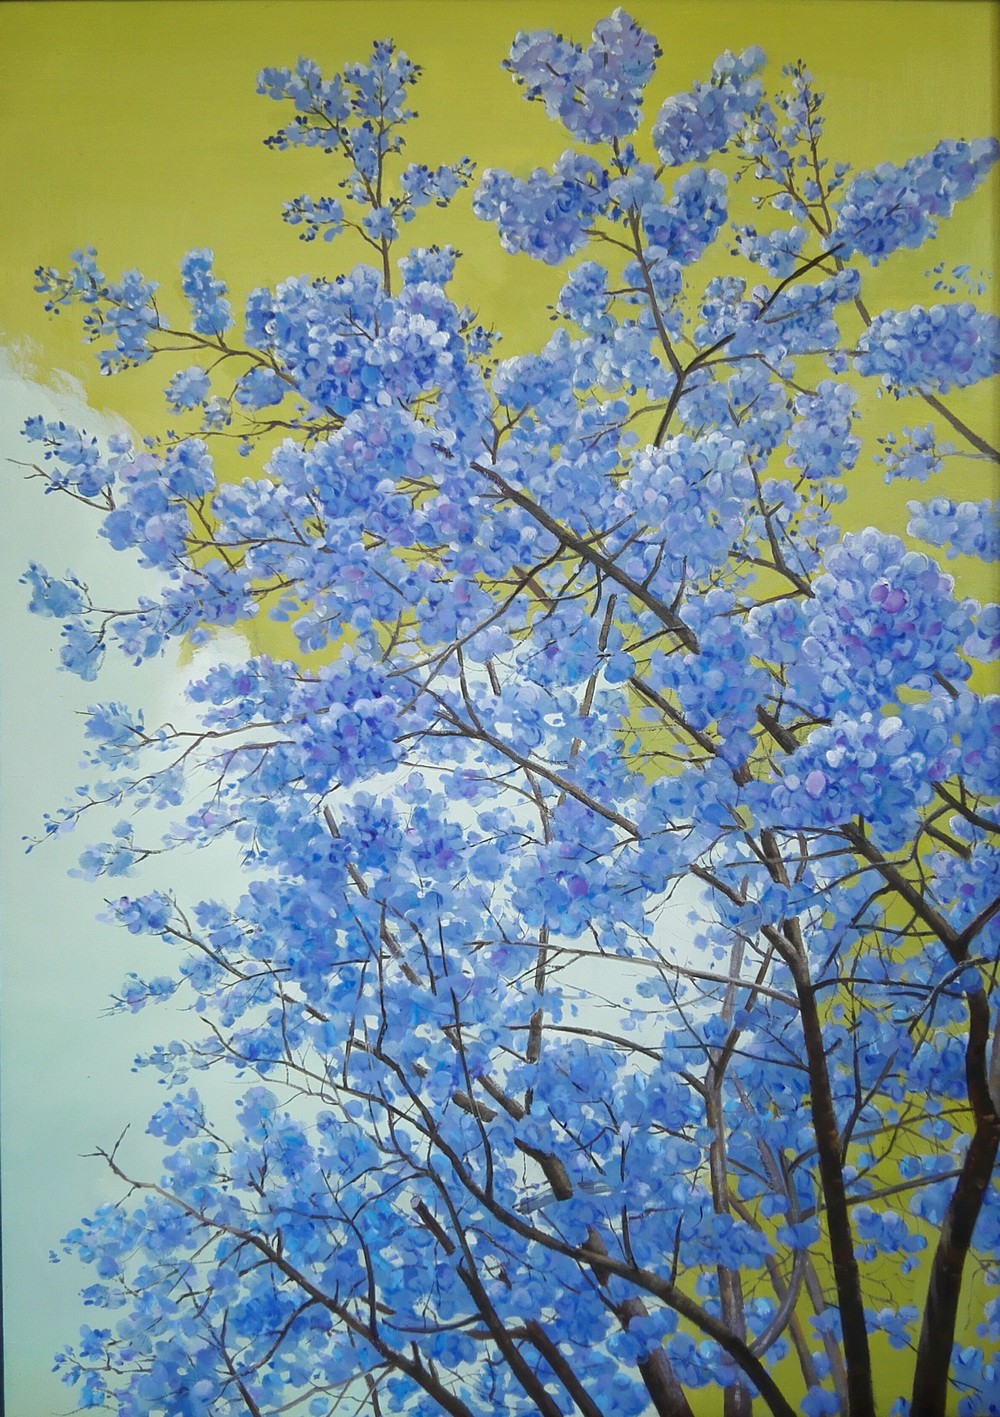 朱朝阳 《蓝色樱花》 120x85cm 油画 2017 西安美术学院